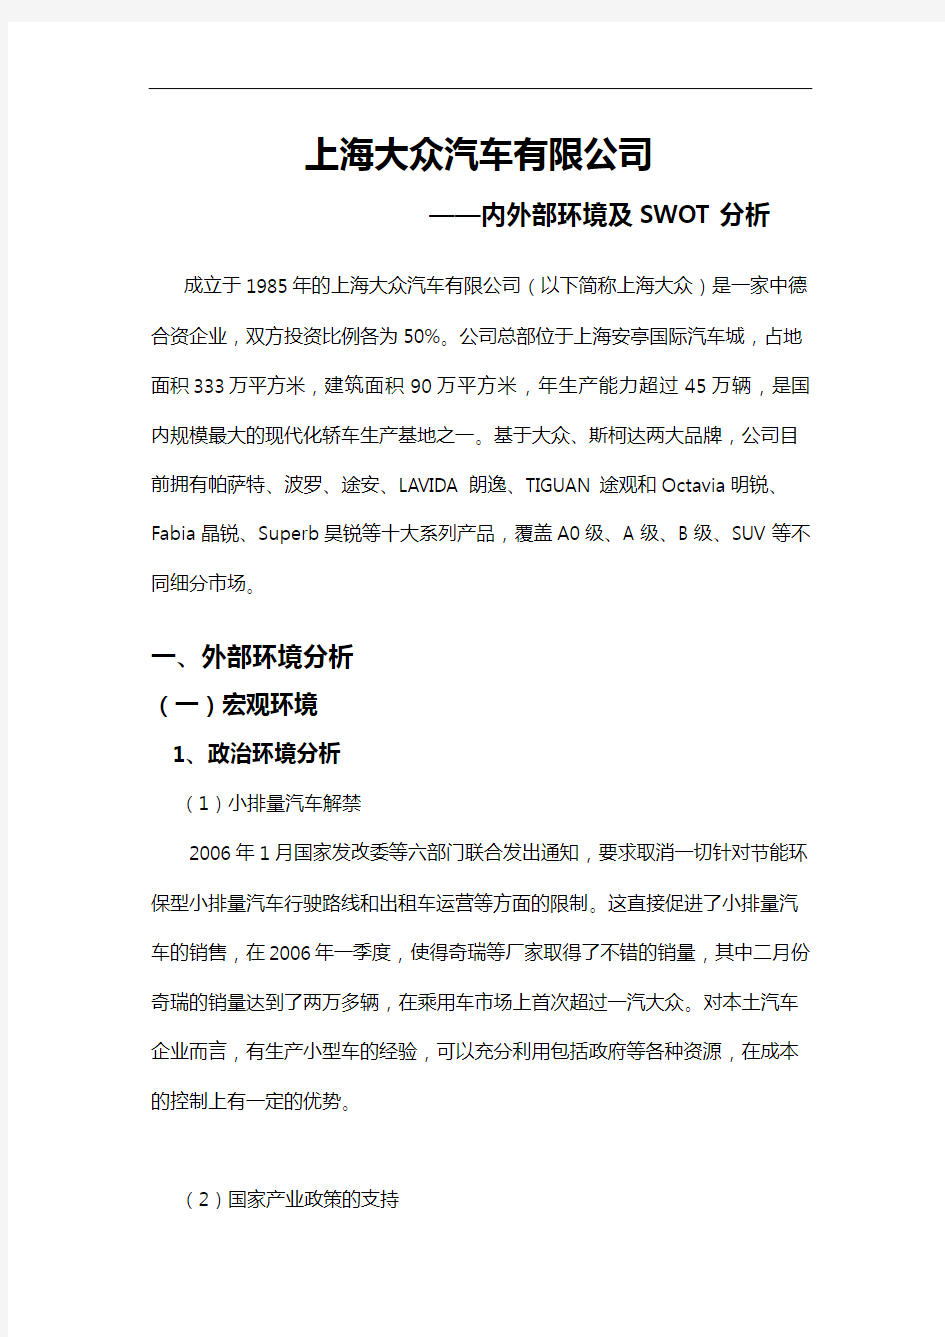 上海大众汽车有限公司内外部环境与SWOT分析报告